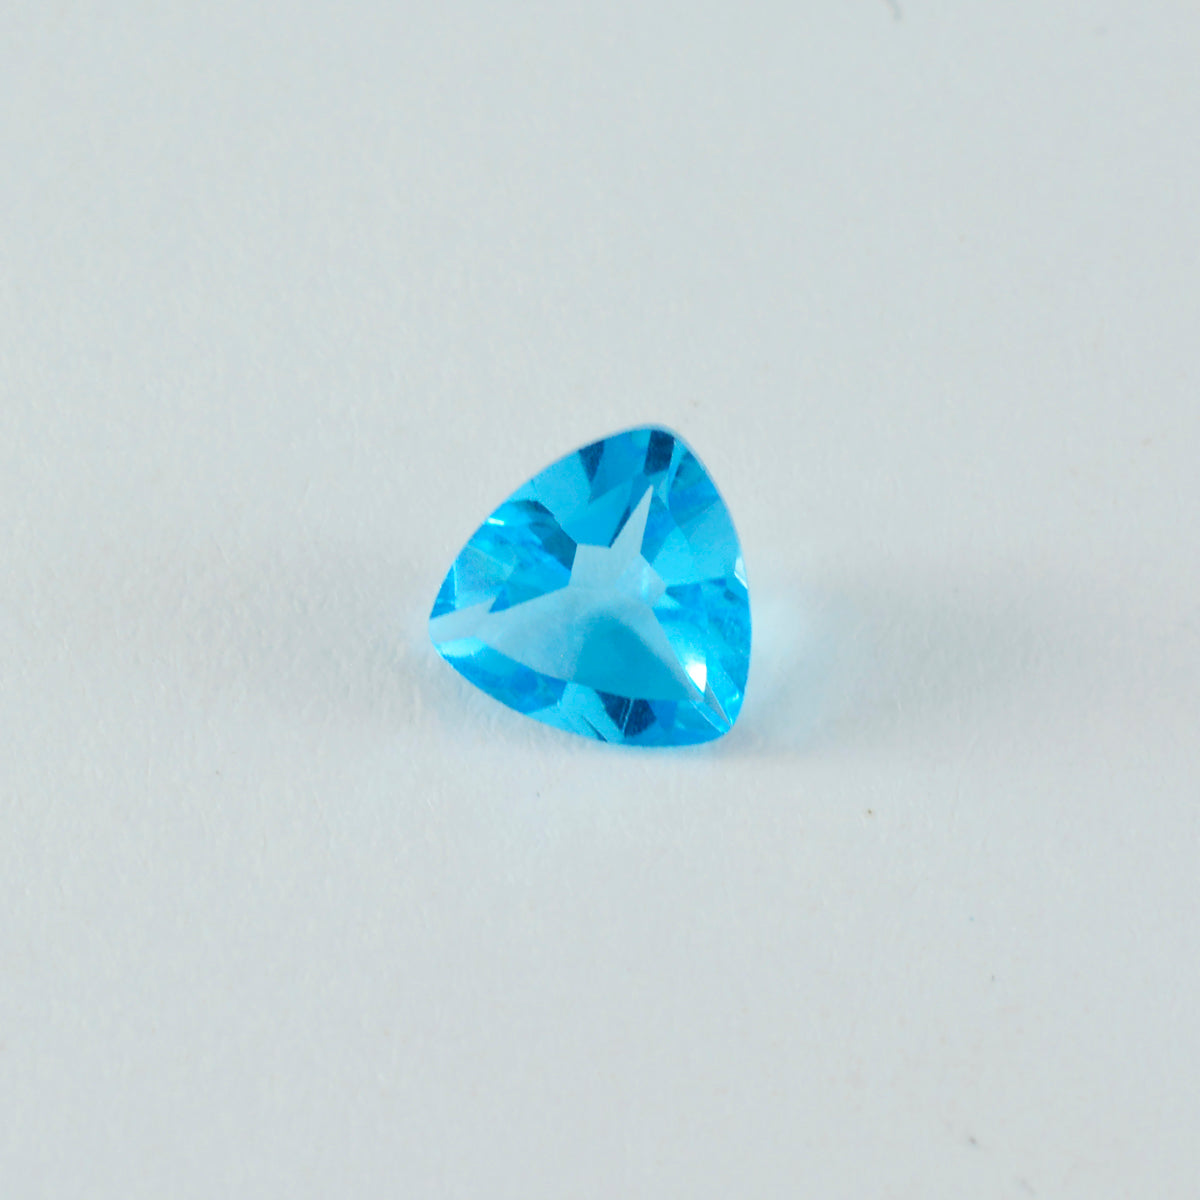 riyogems 1 шт. синий топаз cz ограненный 12x12 мм драгоценный камень в форме триллиона удивительного качества